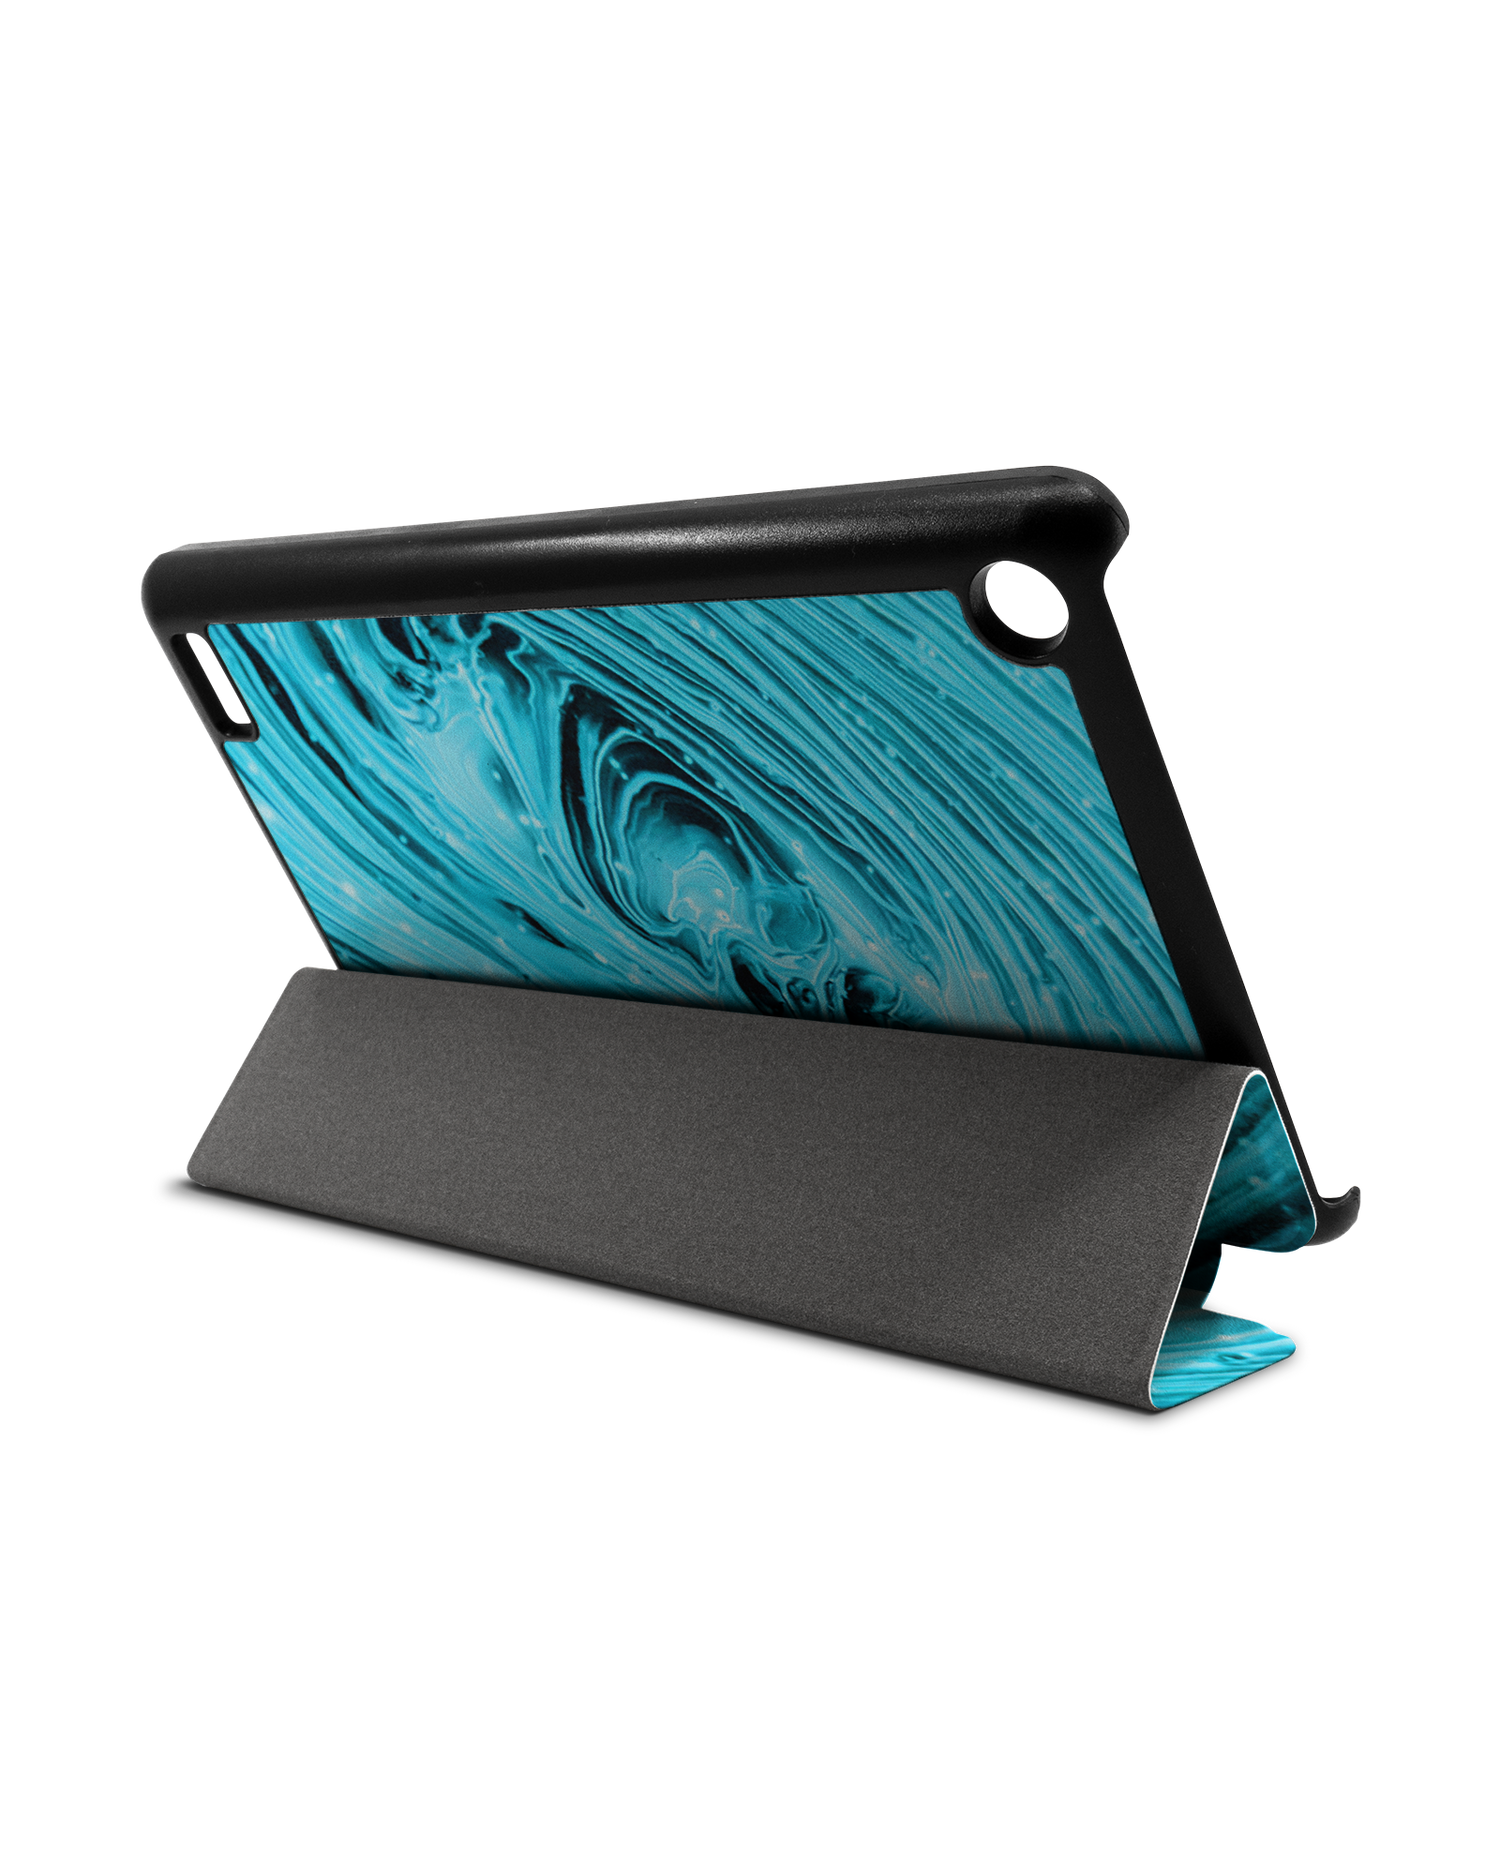 Turquoise Ripples Tablet Smart Case für Amazon Fire 7: Aufgestellt im Querformat